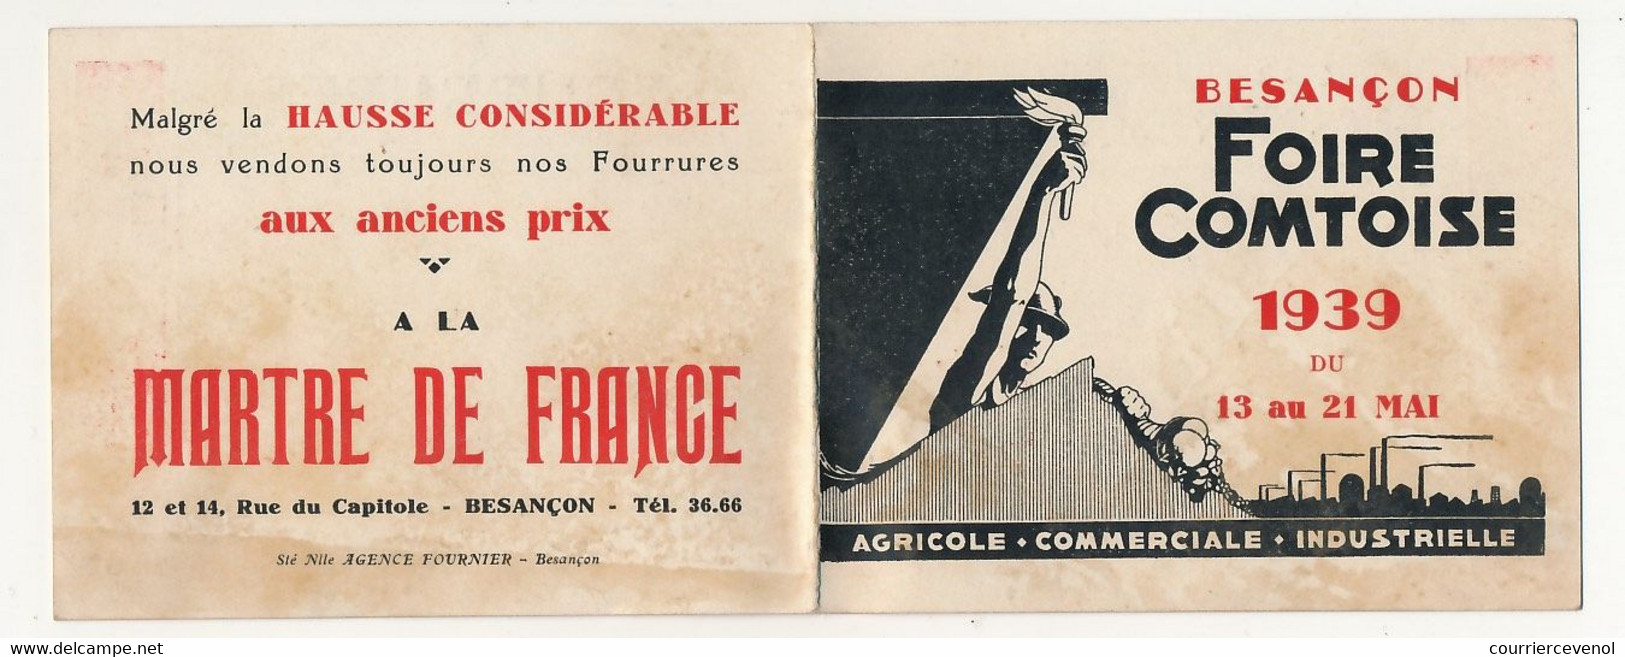 FRANCE - 15eme Foire Exposition Comtoise - 1936 - Carte D'entrée Permanente (X2) + Carte Acheteur 1937 - Tickets D'entrée